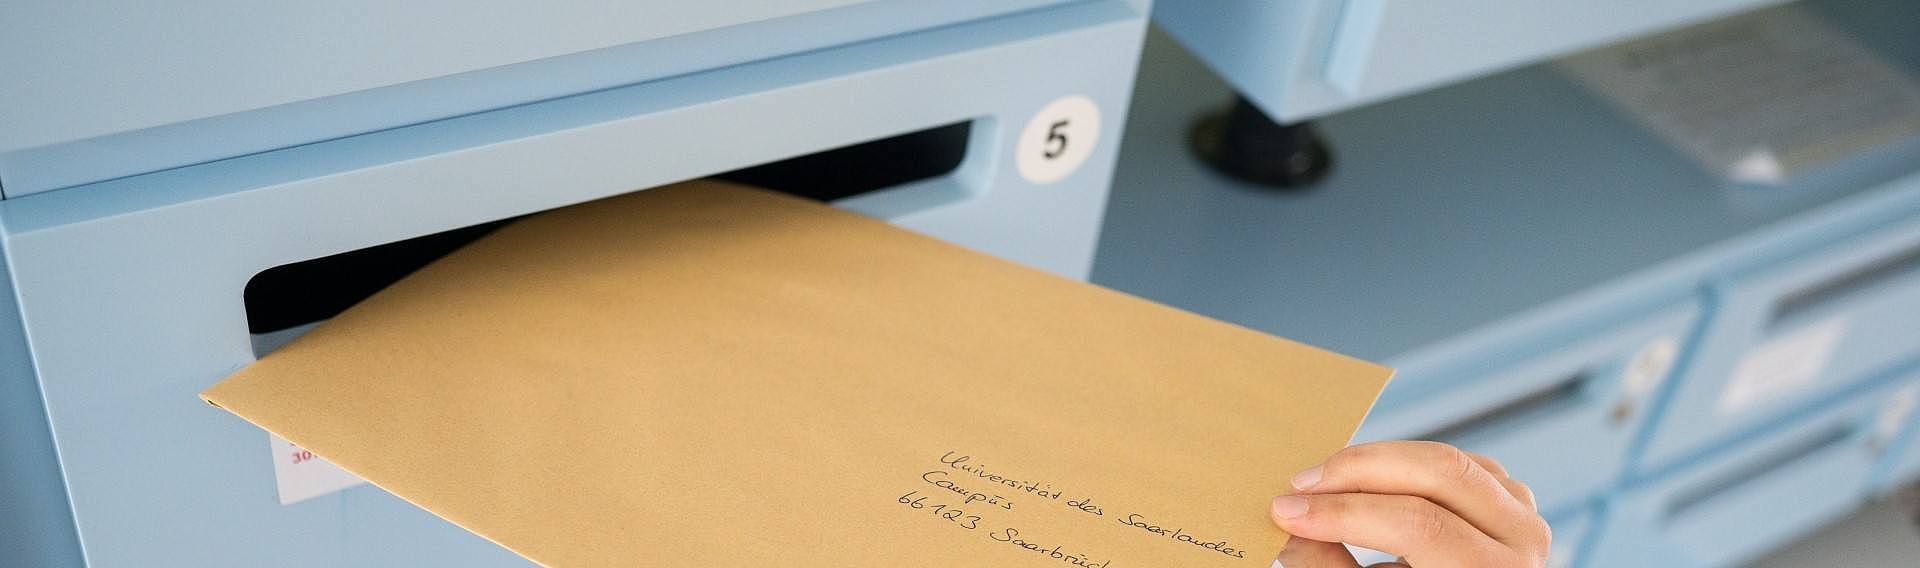 Ein an die Universität des Saarlandes adressierter Brief wird in einen Briefkasten geworfen